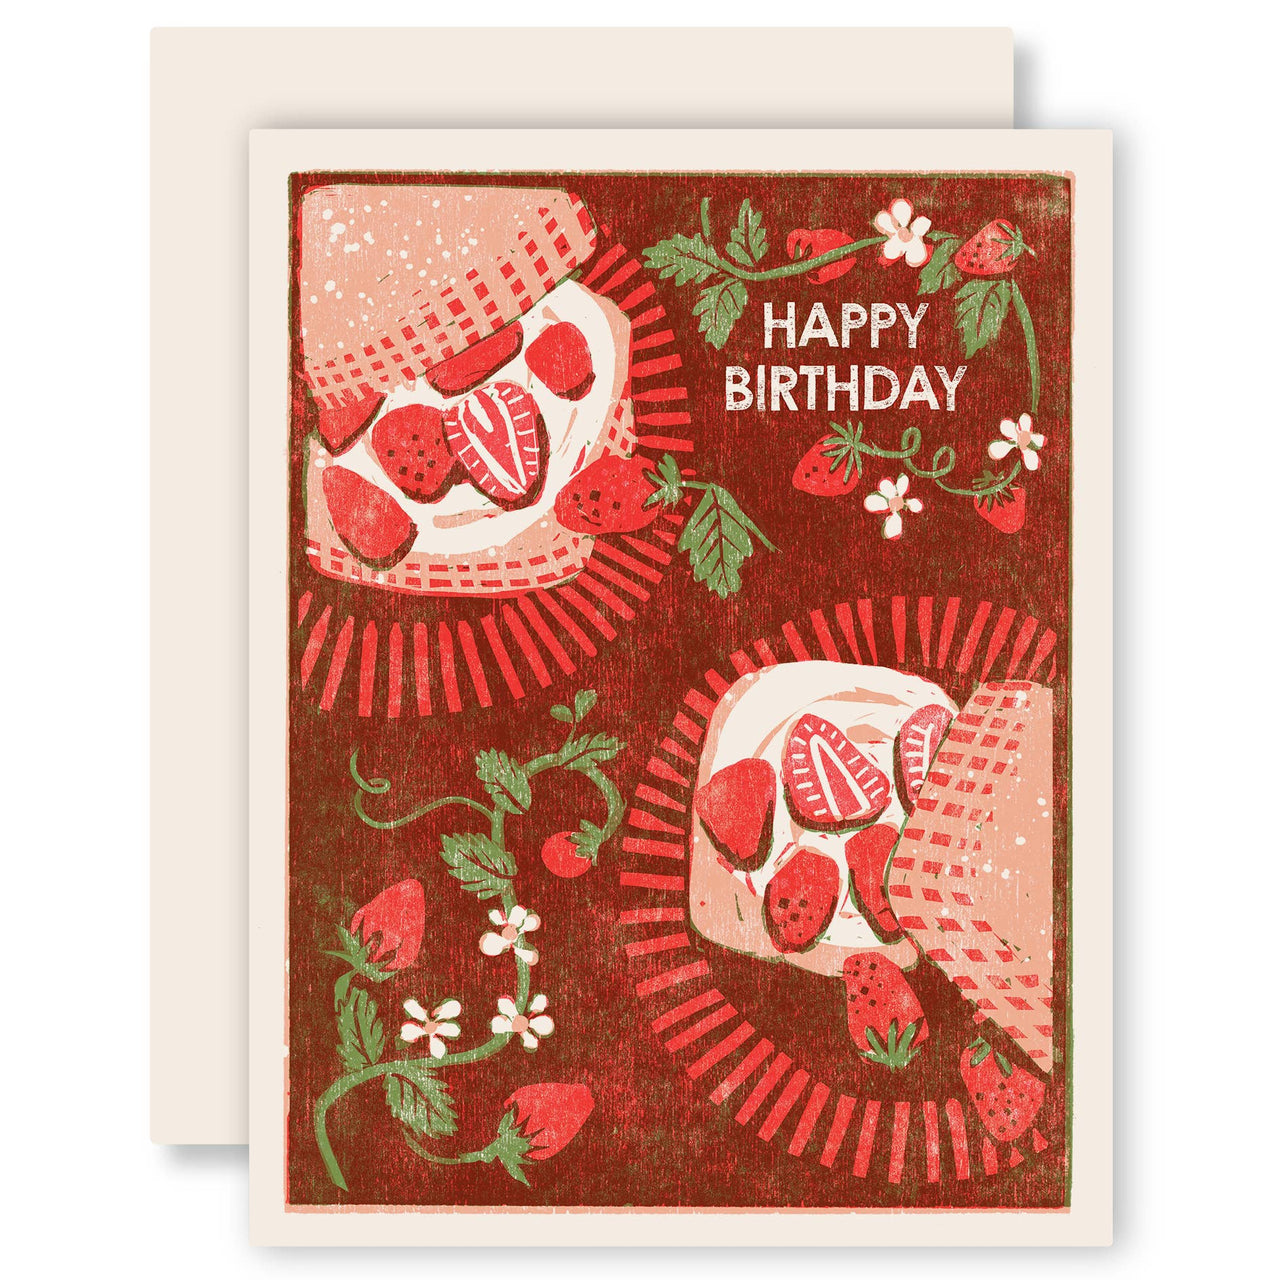 Happy Birthday (Strawberry Shortcake)